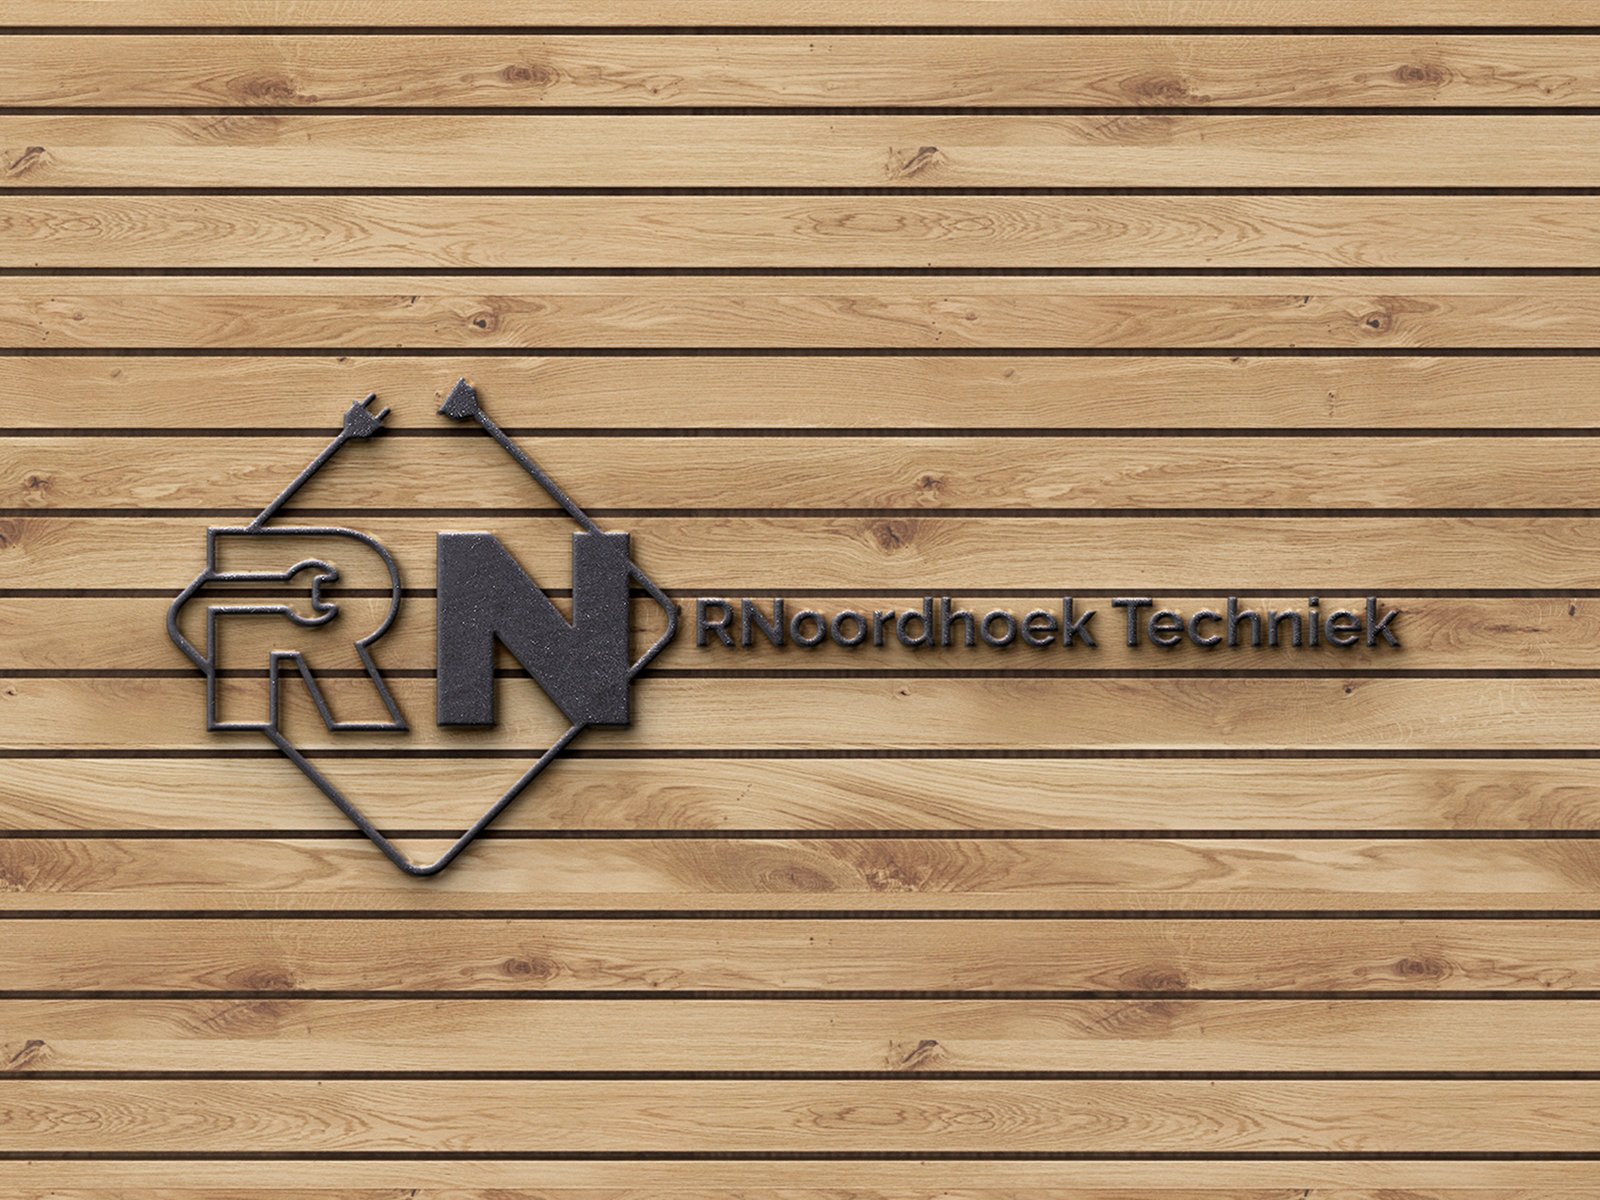 Studio Noordhoek - RNoordhoek Techniek logo